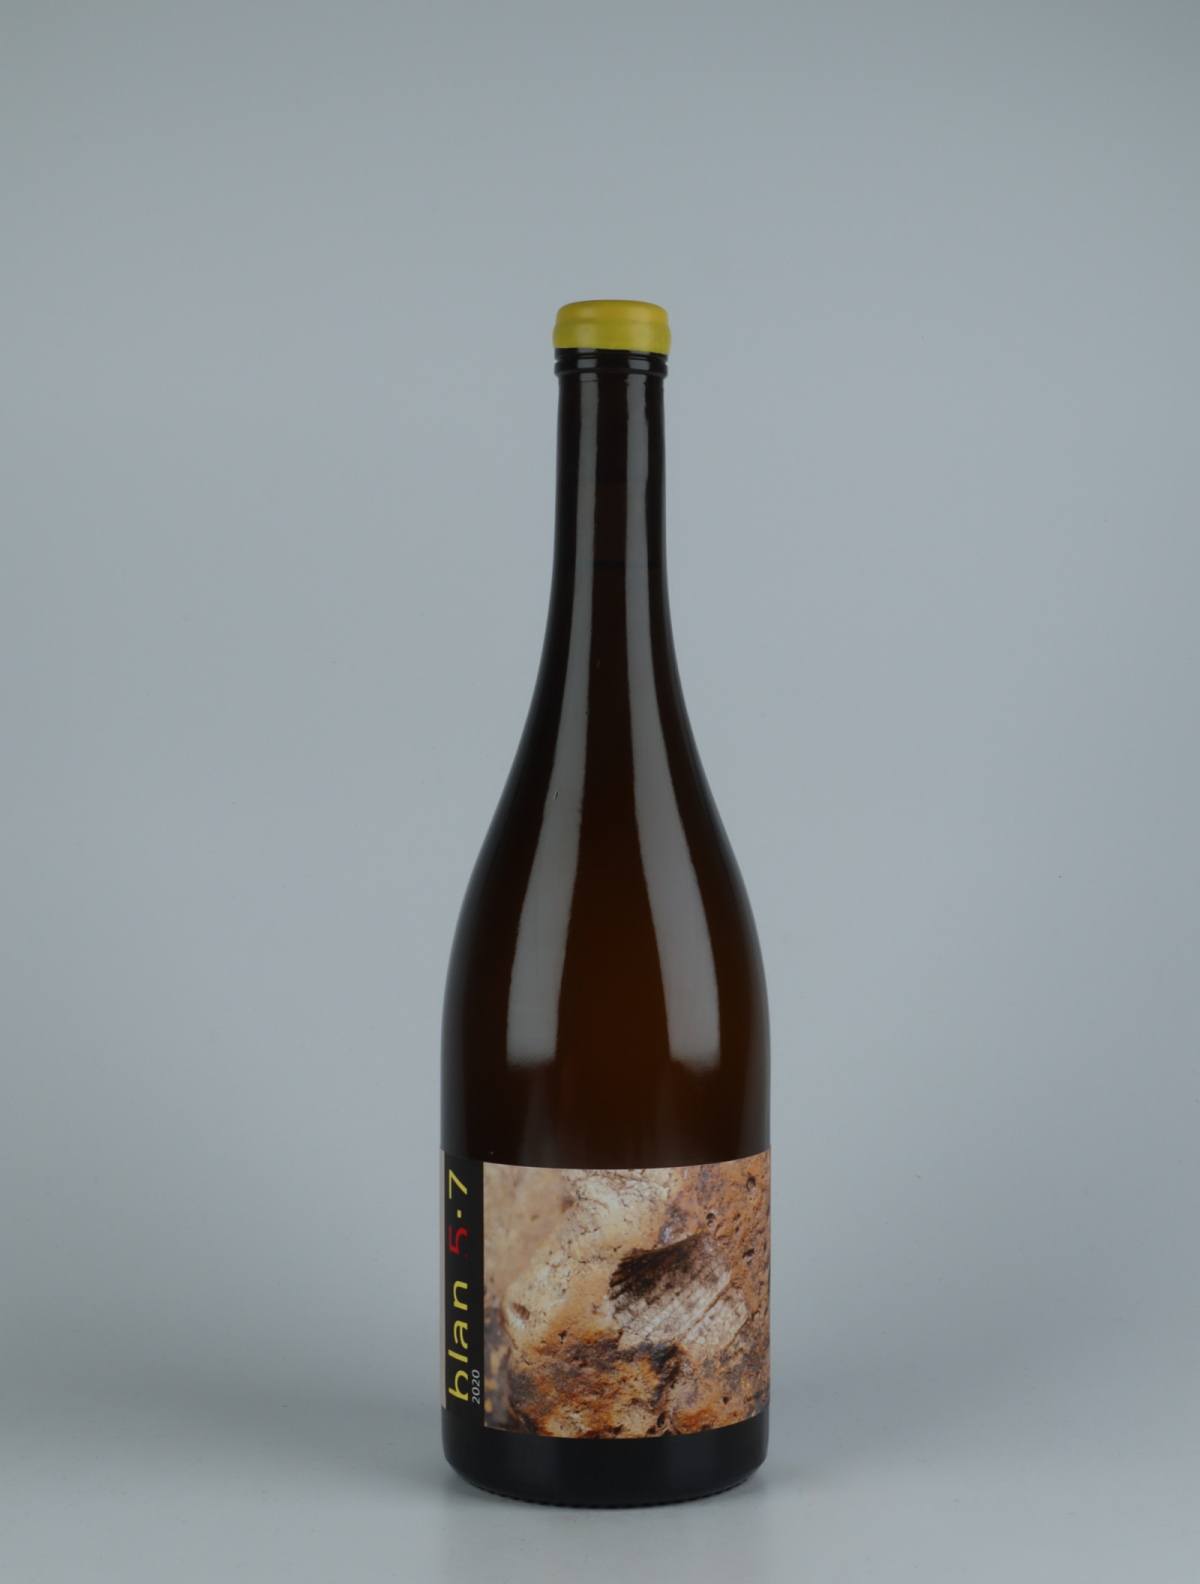 A bottle 2020 Blan 5-7 Orange wine from , Catalonia in Spain